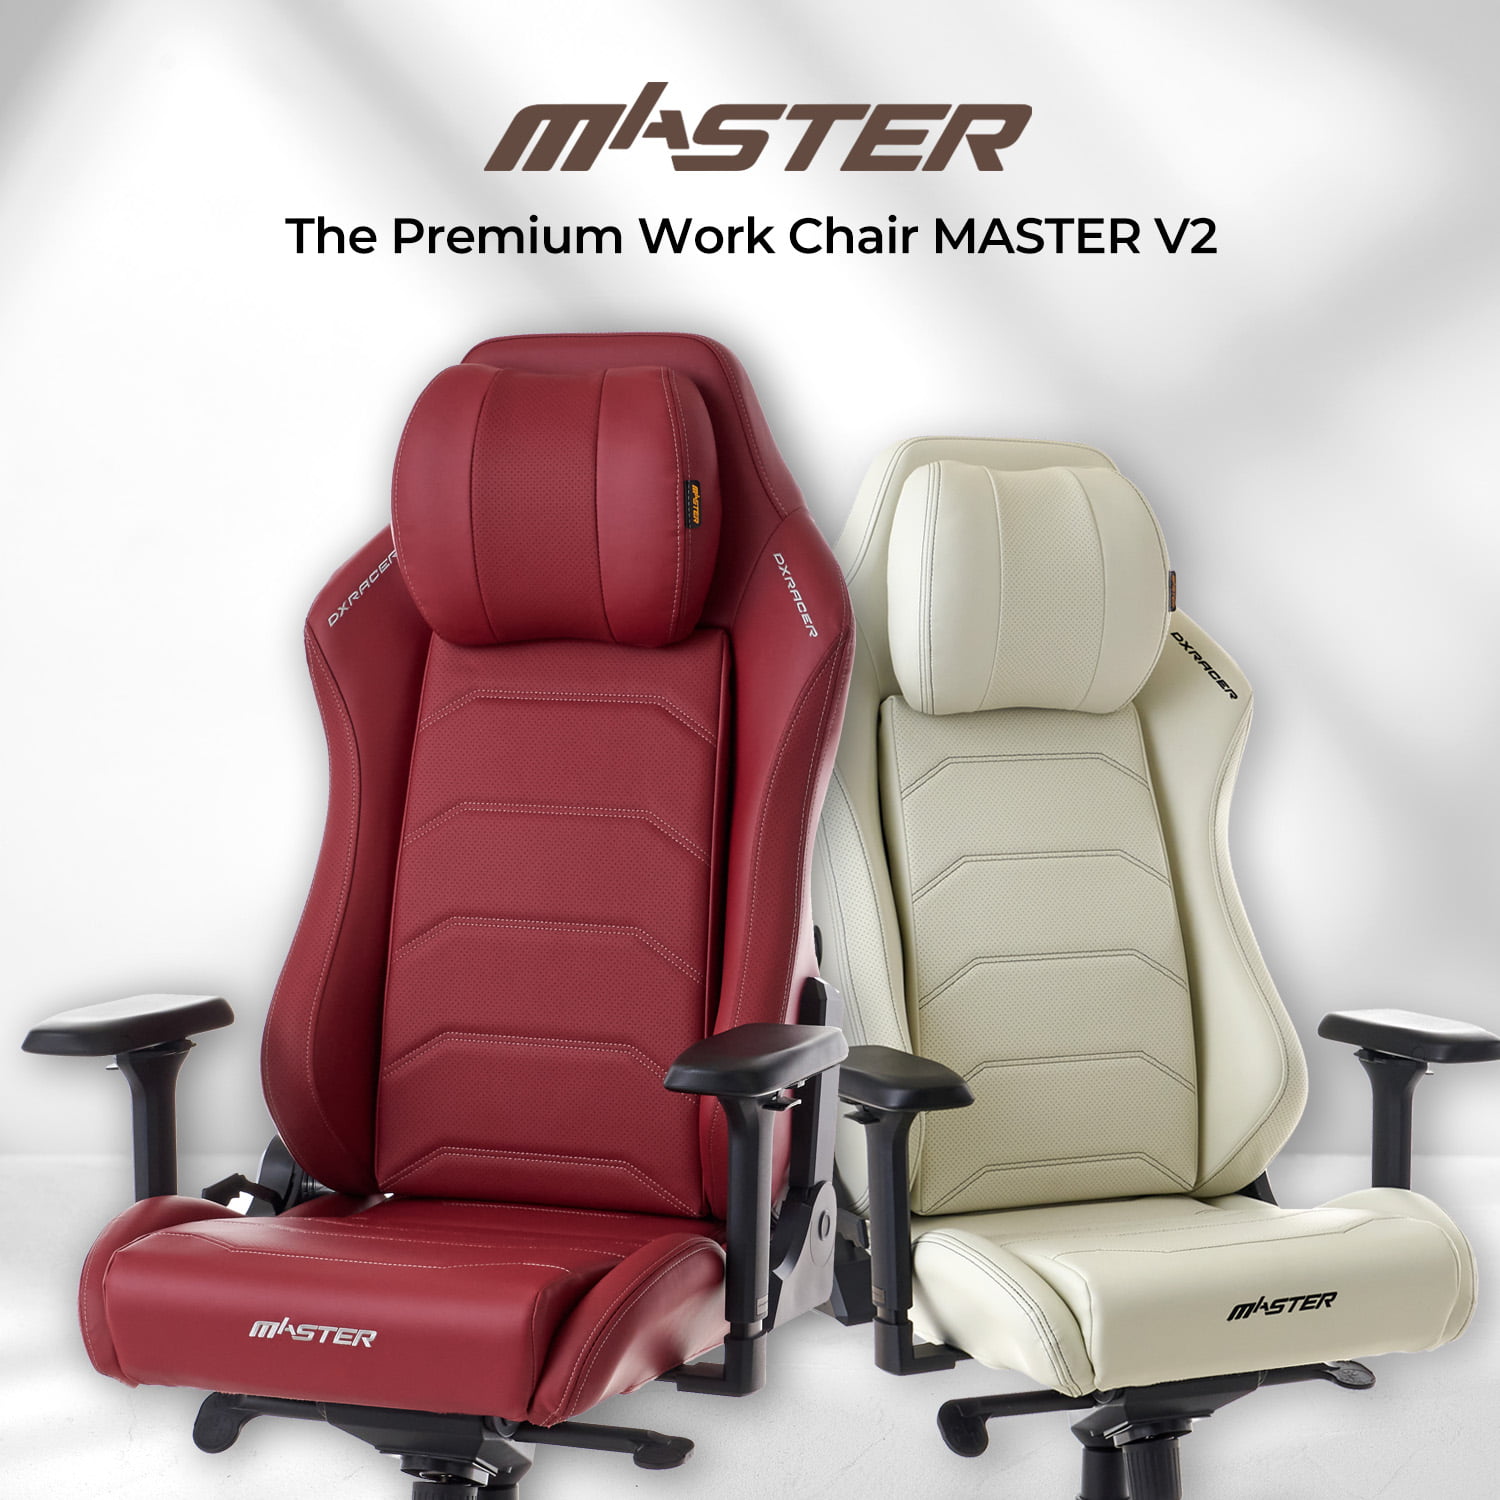 オフィスチェア ゲーミングチェア DXracer MASTER V2 マスター デラックスレーサー MAS-238RD マーロン